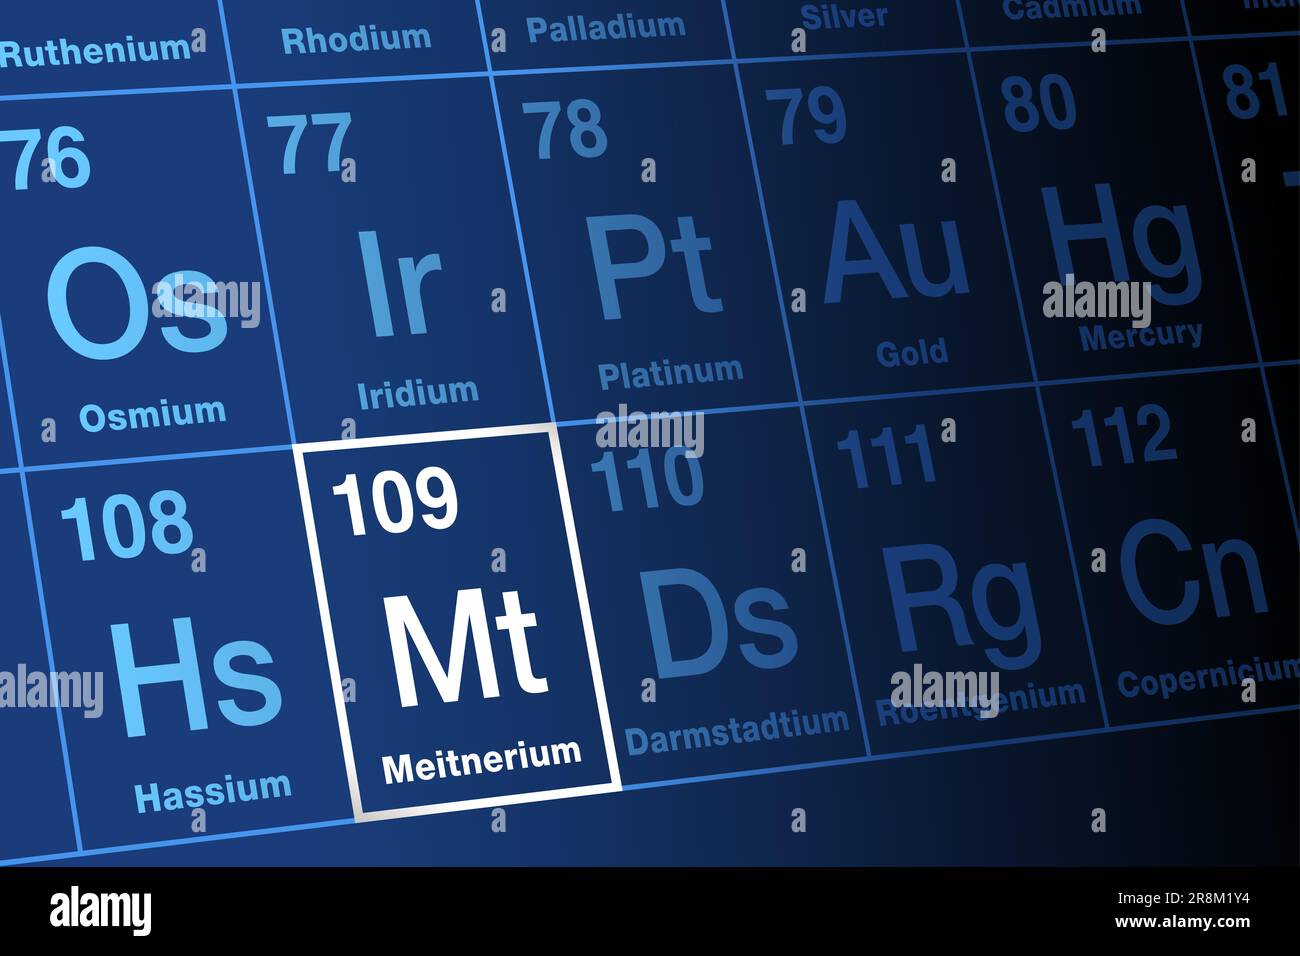 Meitnerium, sur le tableau périodique. Elément transactinide synthétique extrêmement radioactif, superlourd, avec le symbole Mt et le numéro atomique 109. Banque D'Images